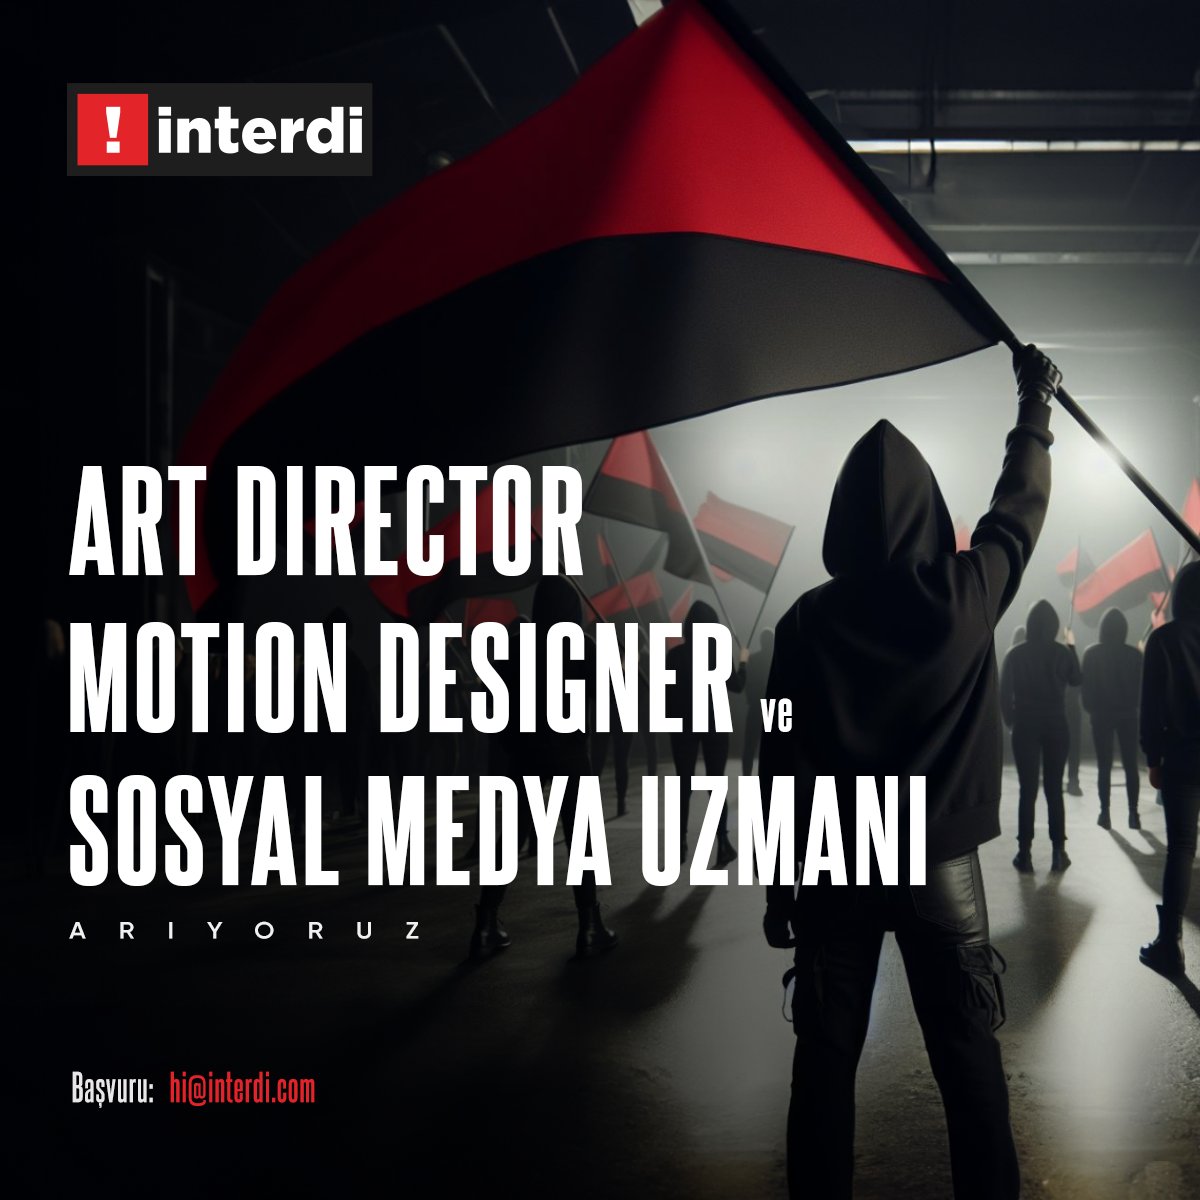 İnterdi, #ArtDirector, #MotionDesigner ve #SosyalMedyaUzmanı Arıyor

ajansisleri.com/interdi-art-di…